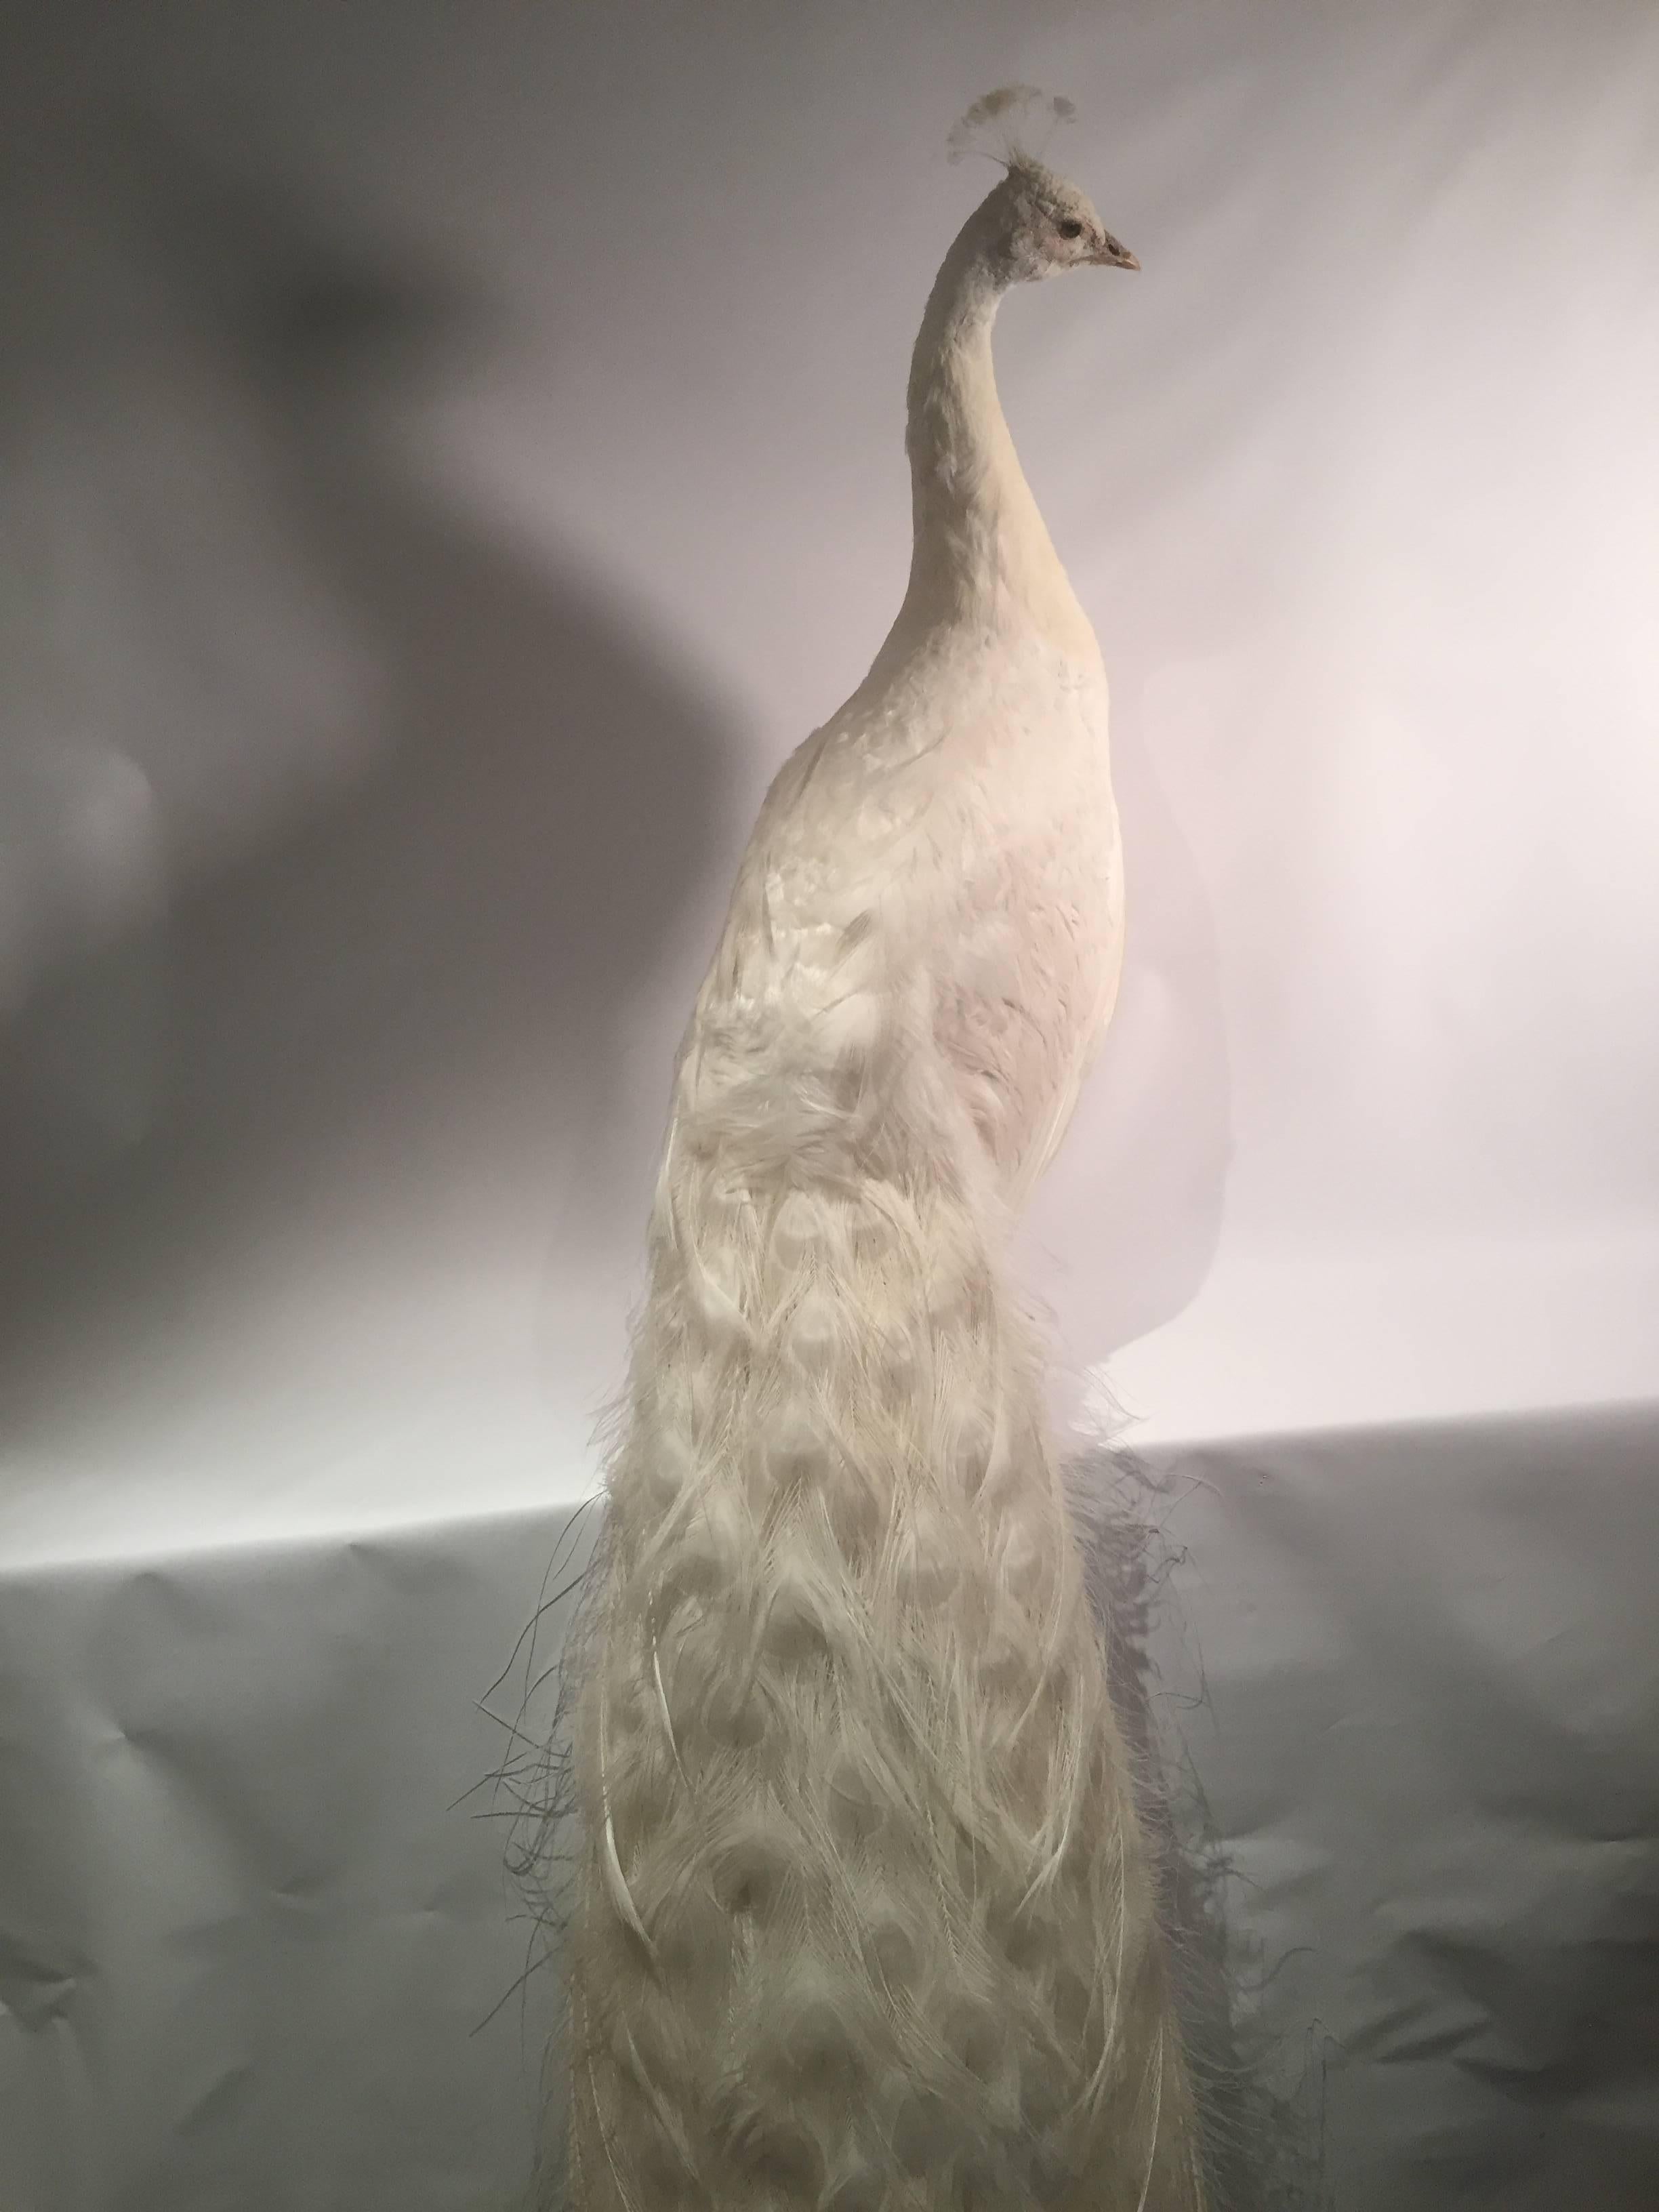 Late Victorian Albino Taxidermy Peacock